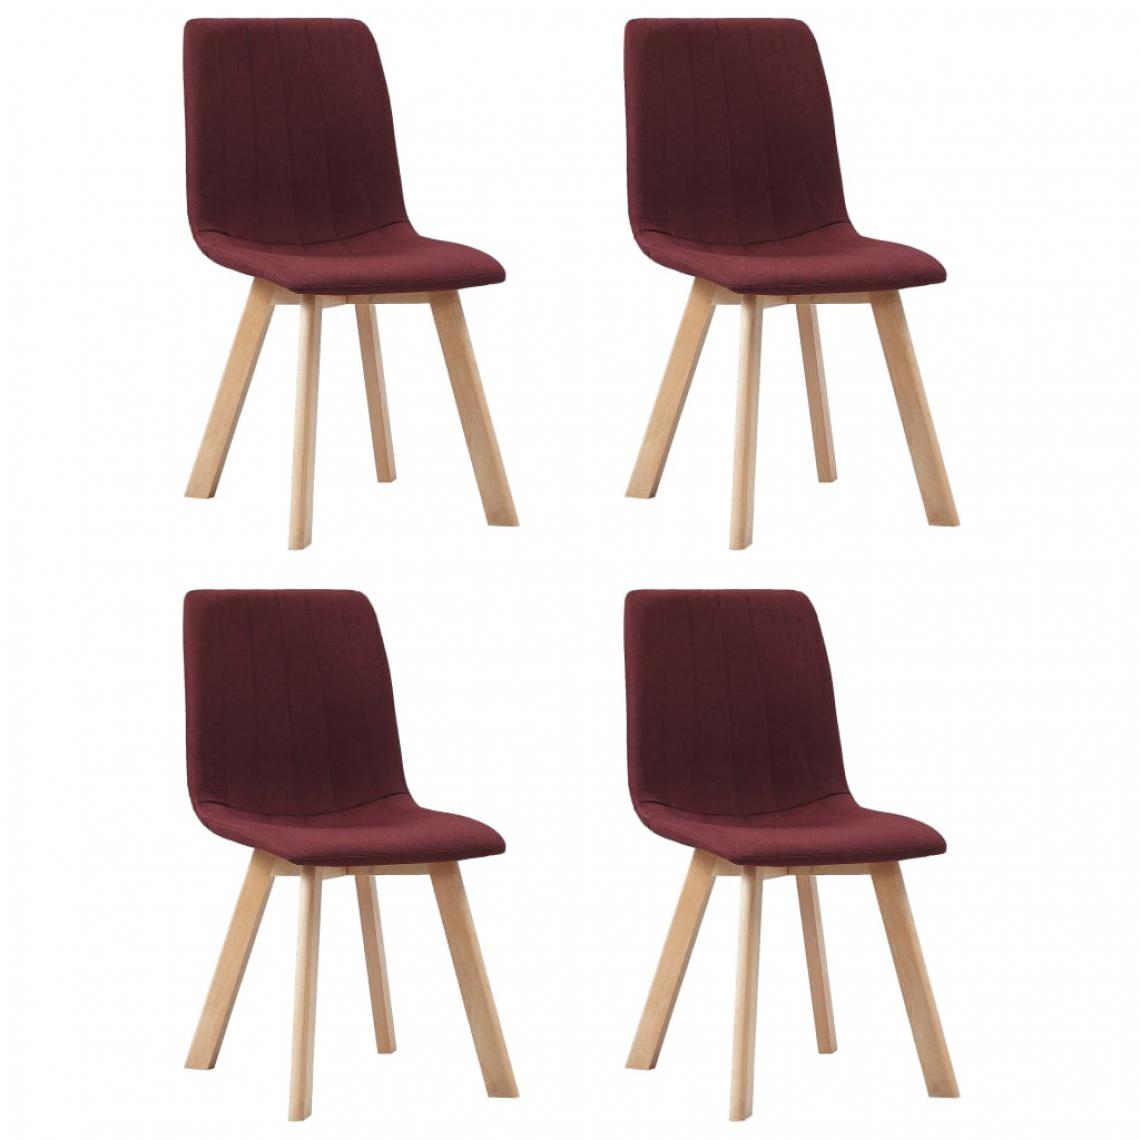 Icaverne - Moderne Fauteuils et chaises edition Mbabane Chaises de salle à manger 4 pcs Rouge bordeaux Tissu - Chaises